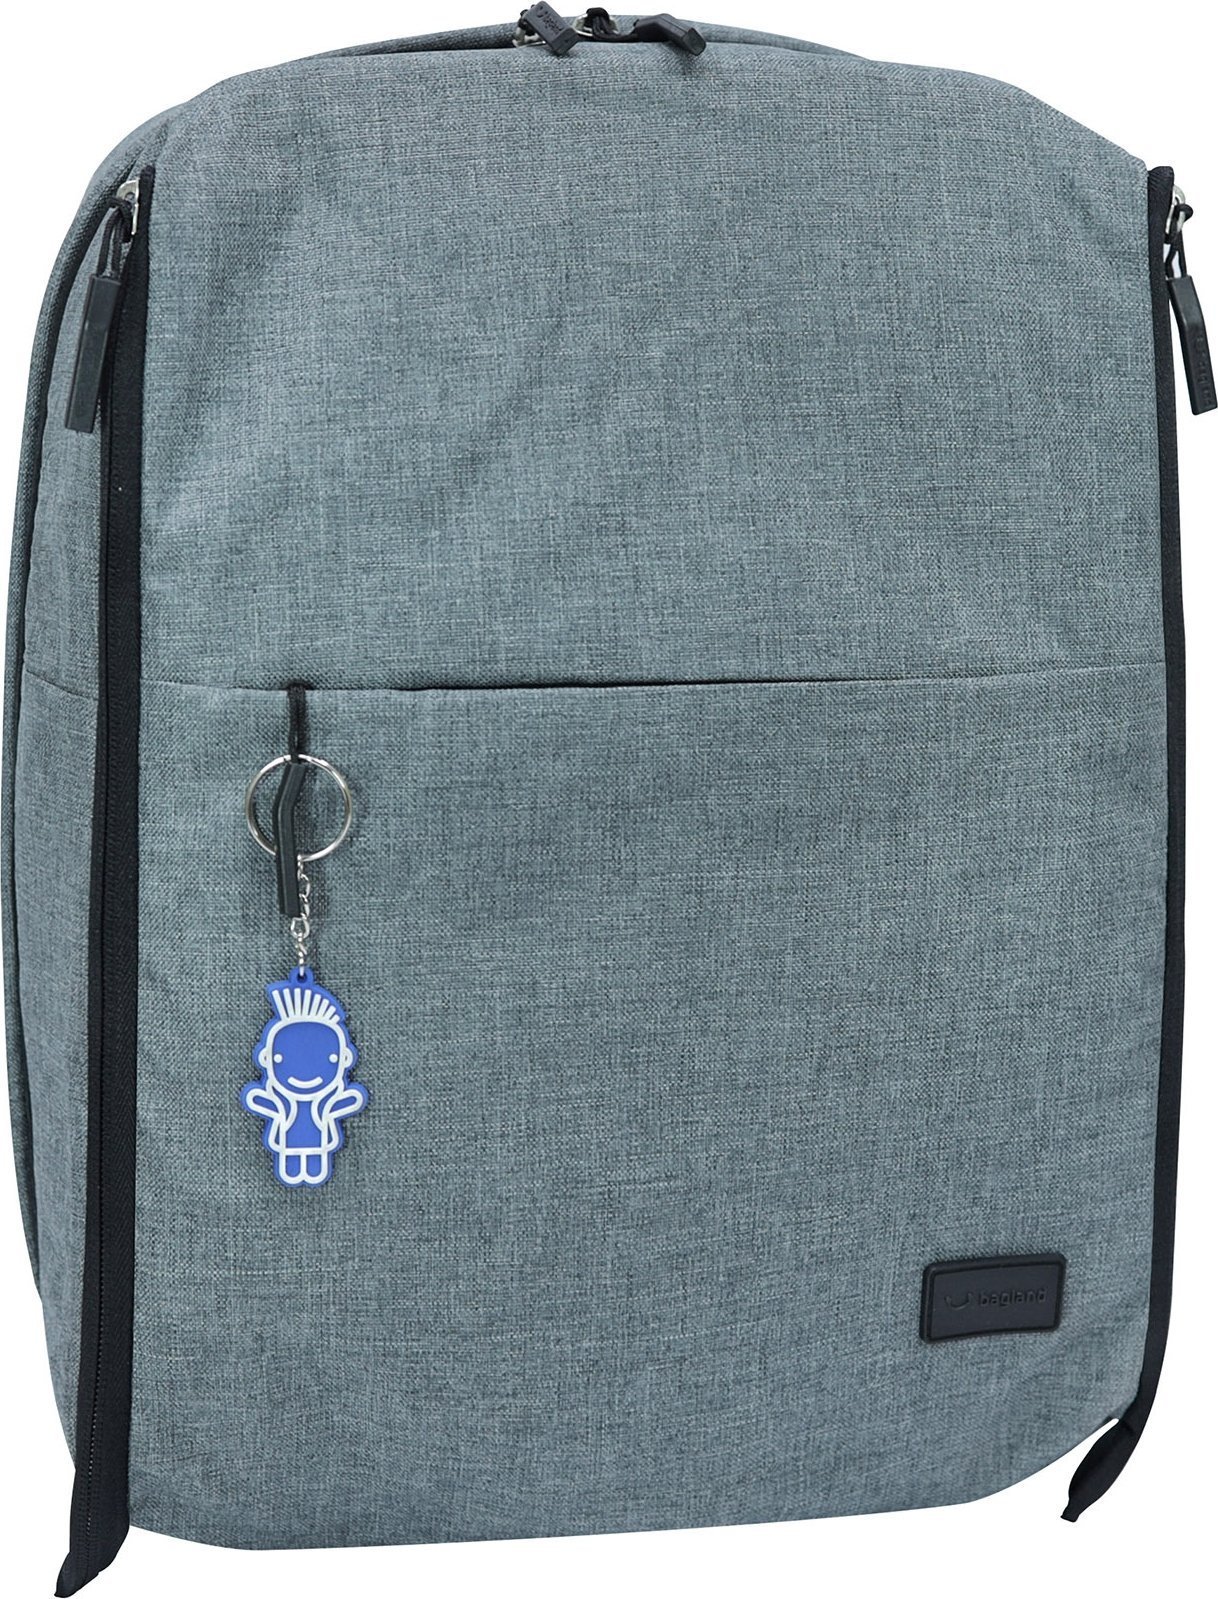 Серый текстильный рюкзак под ноутбук с USB-разъемом - Bagland 55659